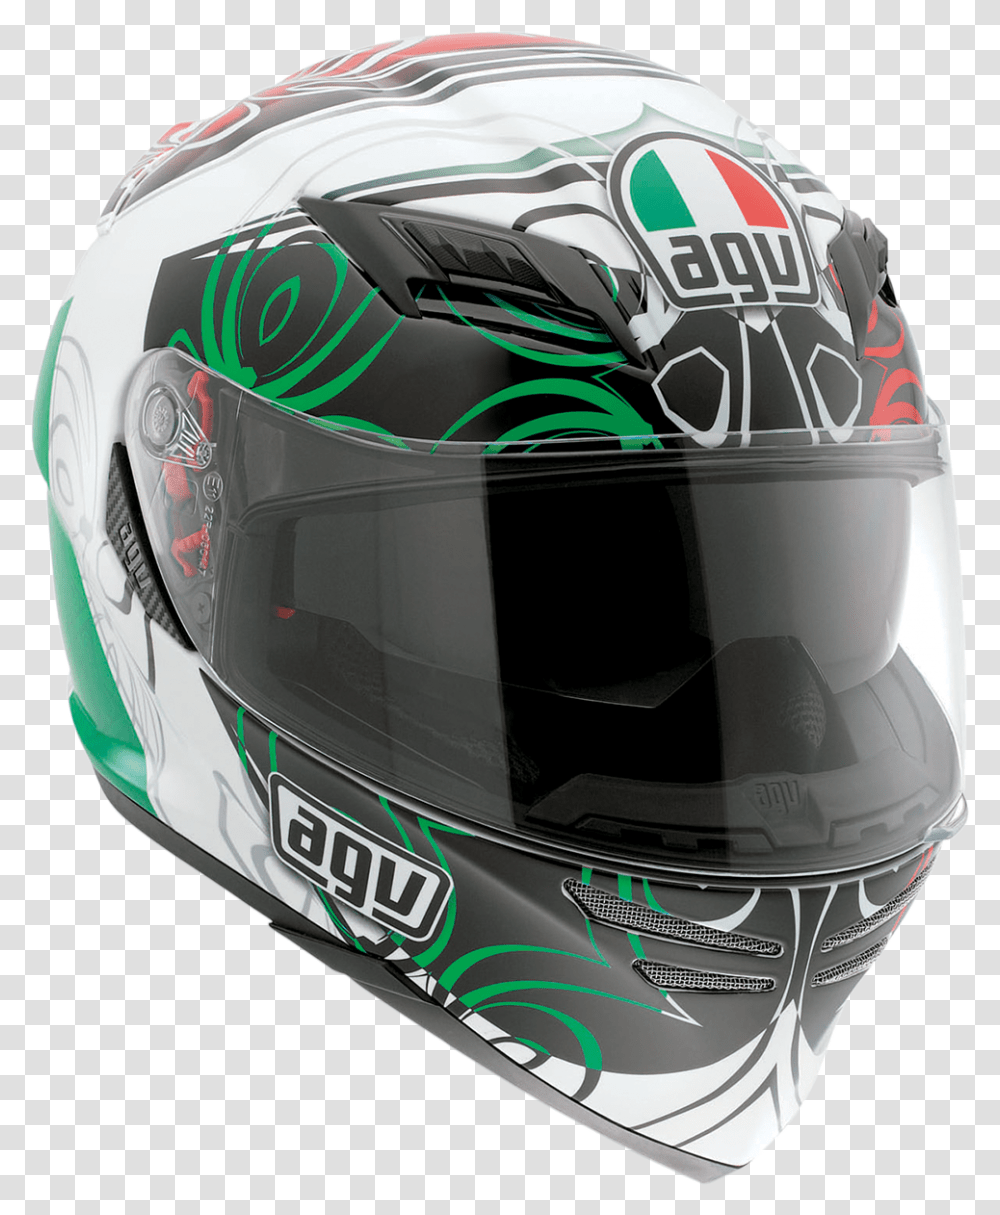 Horizon Helmet Hor Absol Italy Xl Caschi Integrali Agv 2019, Apparel, Crash Helmet Transparent Png